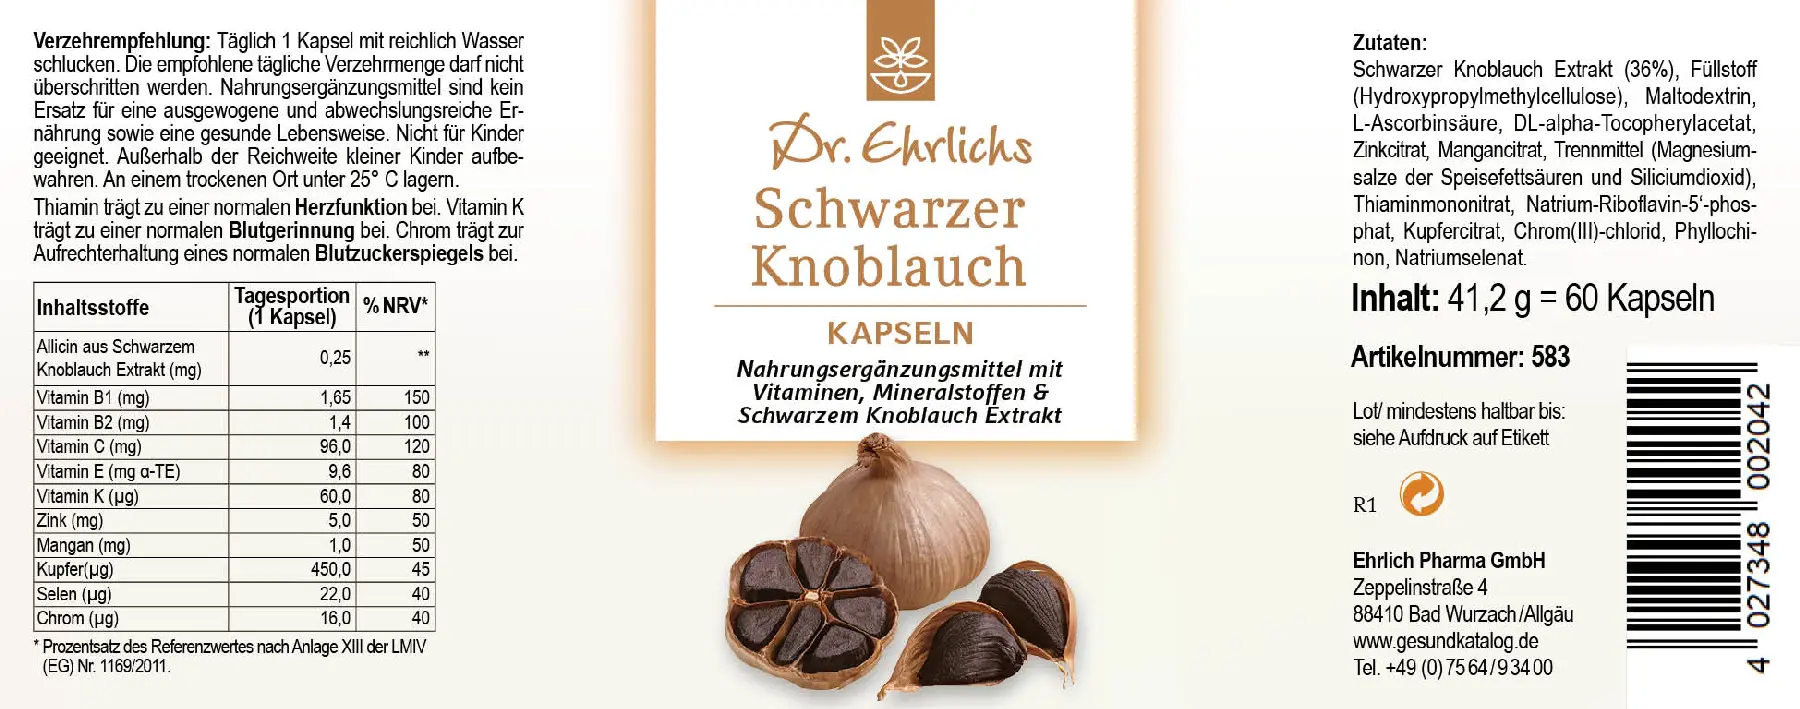 Dr. Ehrlichs Schwarzer Knoblauch Kapseln - 60 Kapseln